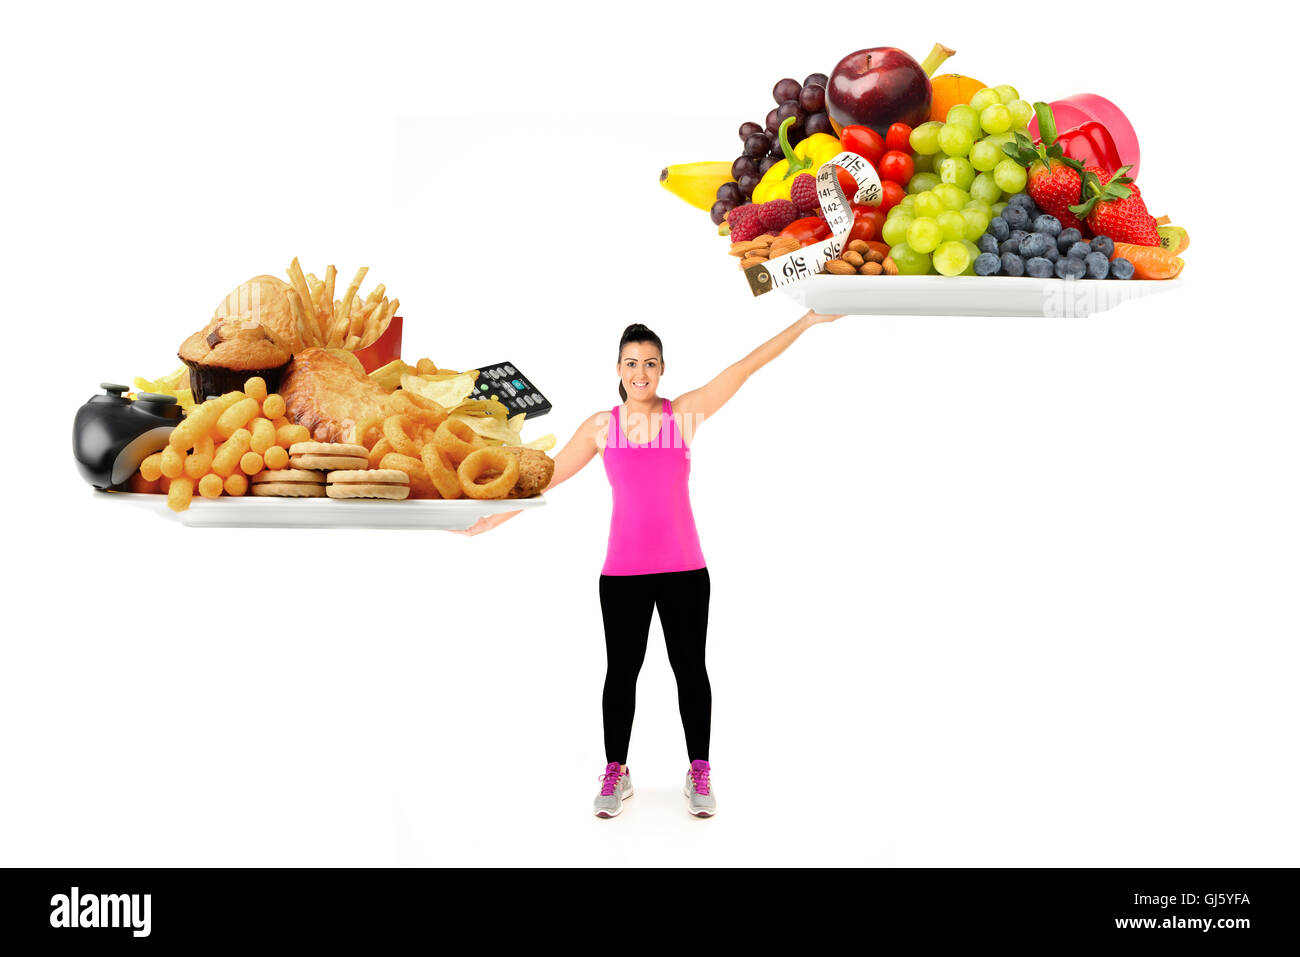 Gesunde oder ungesunde Lebensweise und Ernährung Konzept gesunde junge Frau mit Platten von gesunden und ungesunden Lebensmitteln als wiegen Waage Stockfoto